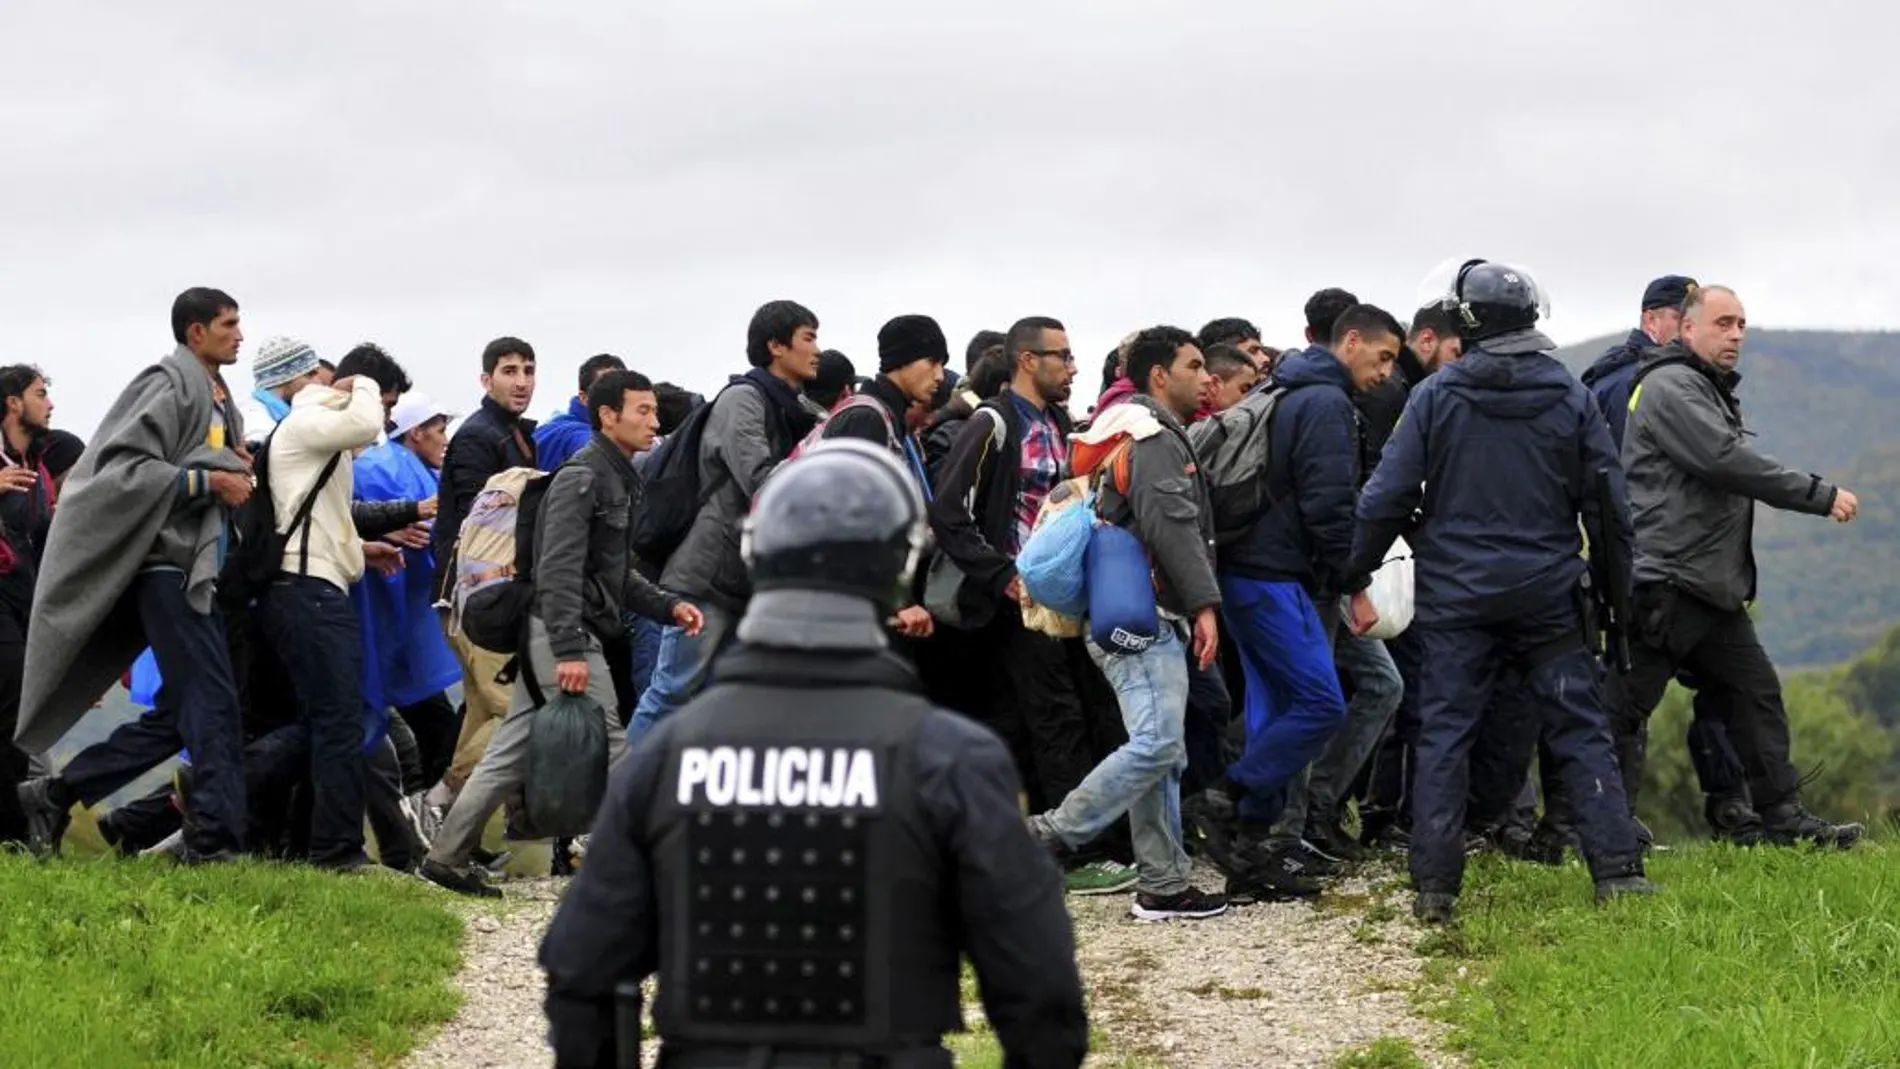 Un agente de policía observa a los refugiados procedentes de Croacia mientras caminan hacia el centro de registro de Brezice, Eslovenia